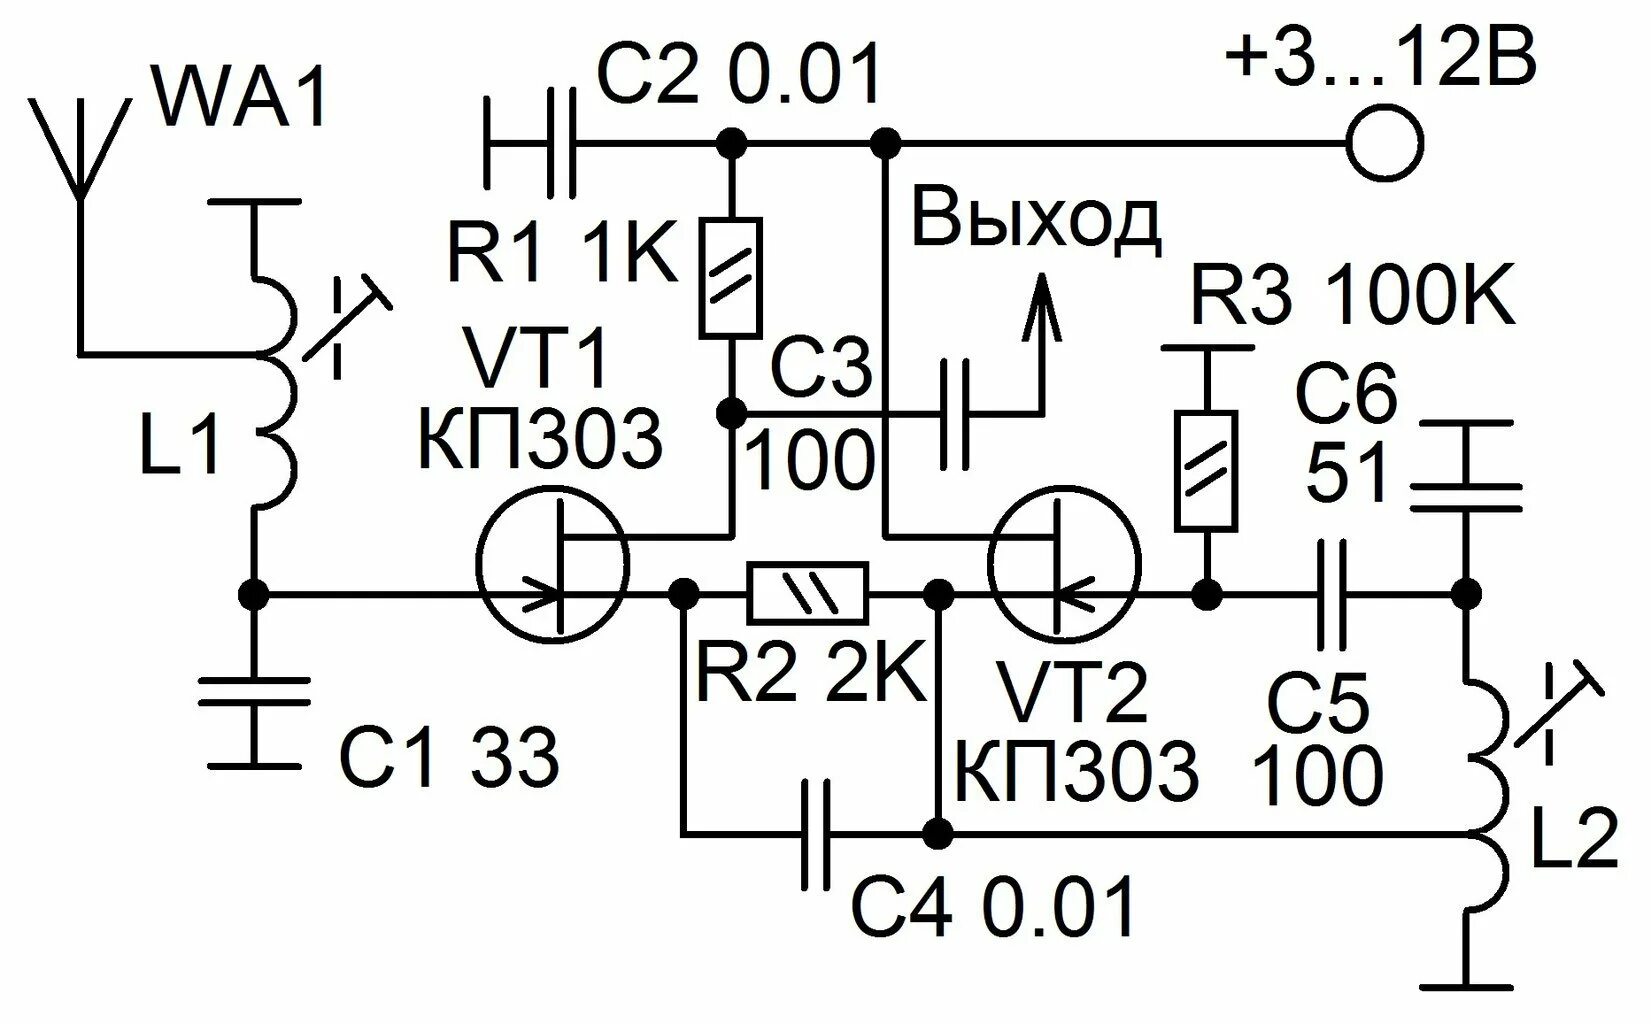 Схема УКВ 88-108мгц приемника на транзисторах. Fm радиоприемник на транзисторах 88 108 МГЦ. Схема приемника прямого усиления на 27 МГЦ. Схема конвертера УКВ fm на транзисторах. Простые укв